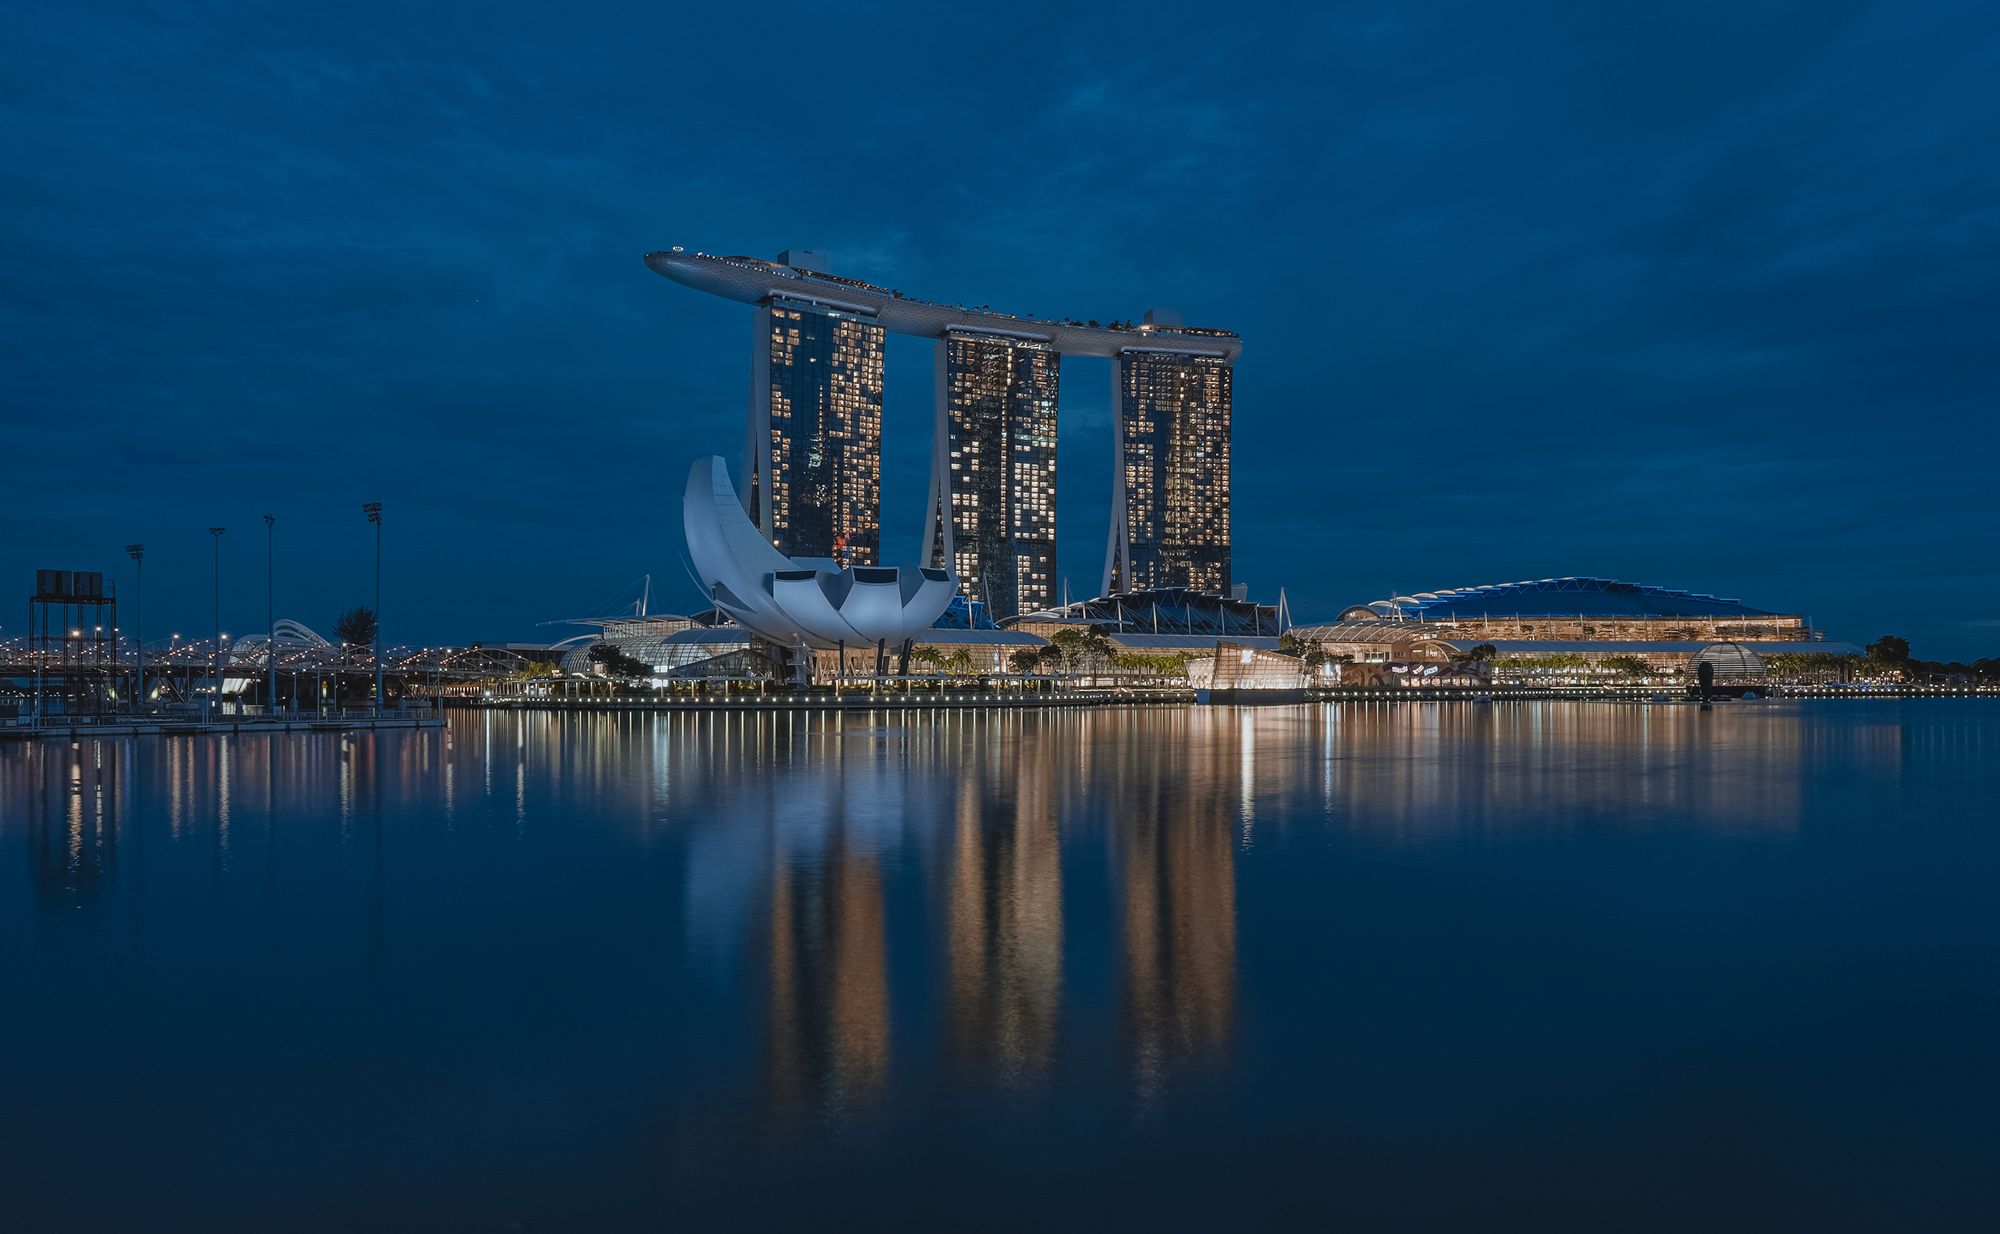 An evening shot of Marina Bay Sands, Singapore.